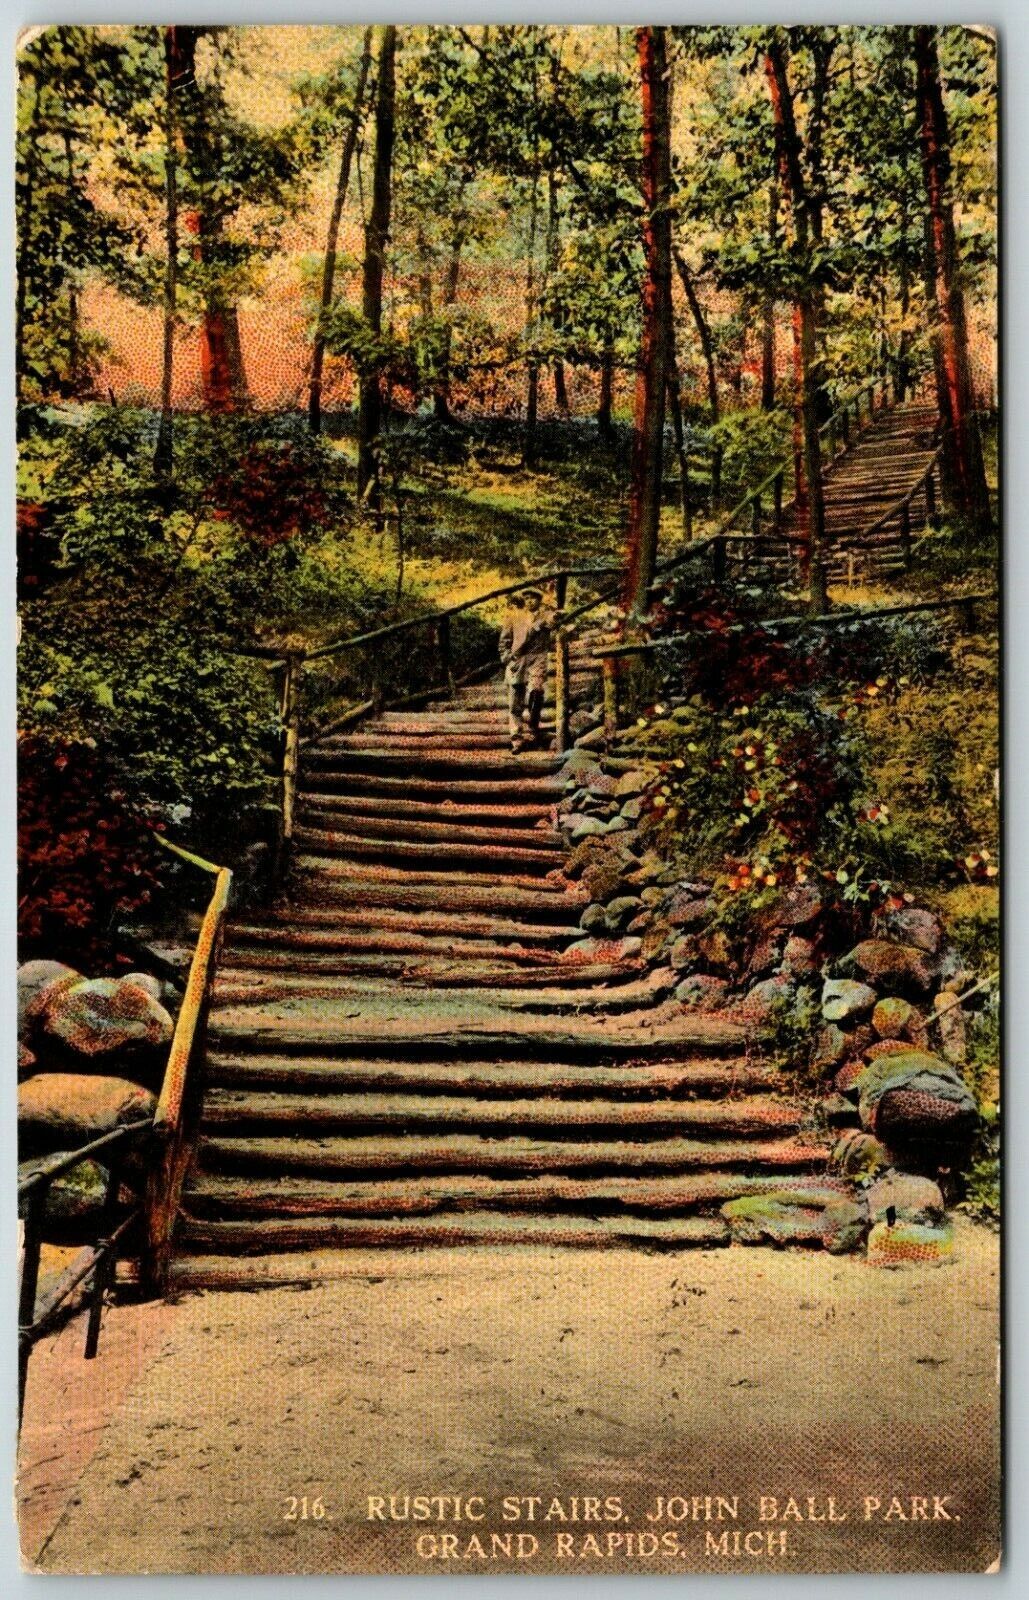 Rustic Stairway at John Ball Park, Grand Rapids, Michigan - Postcard